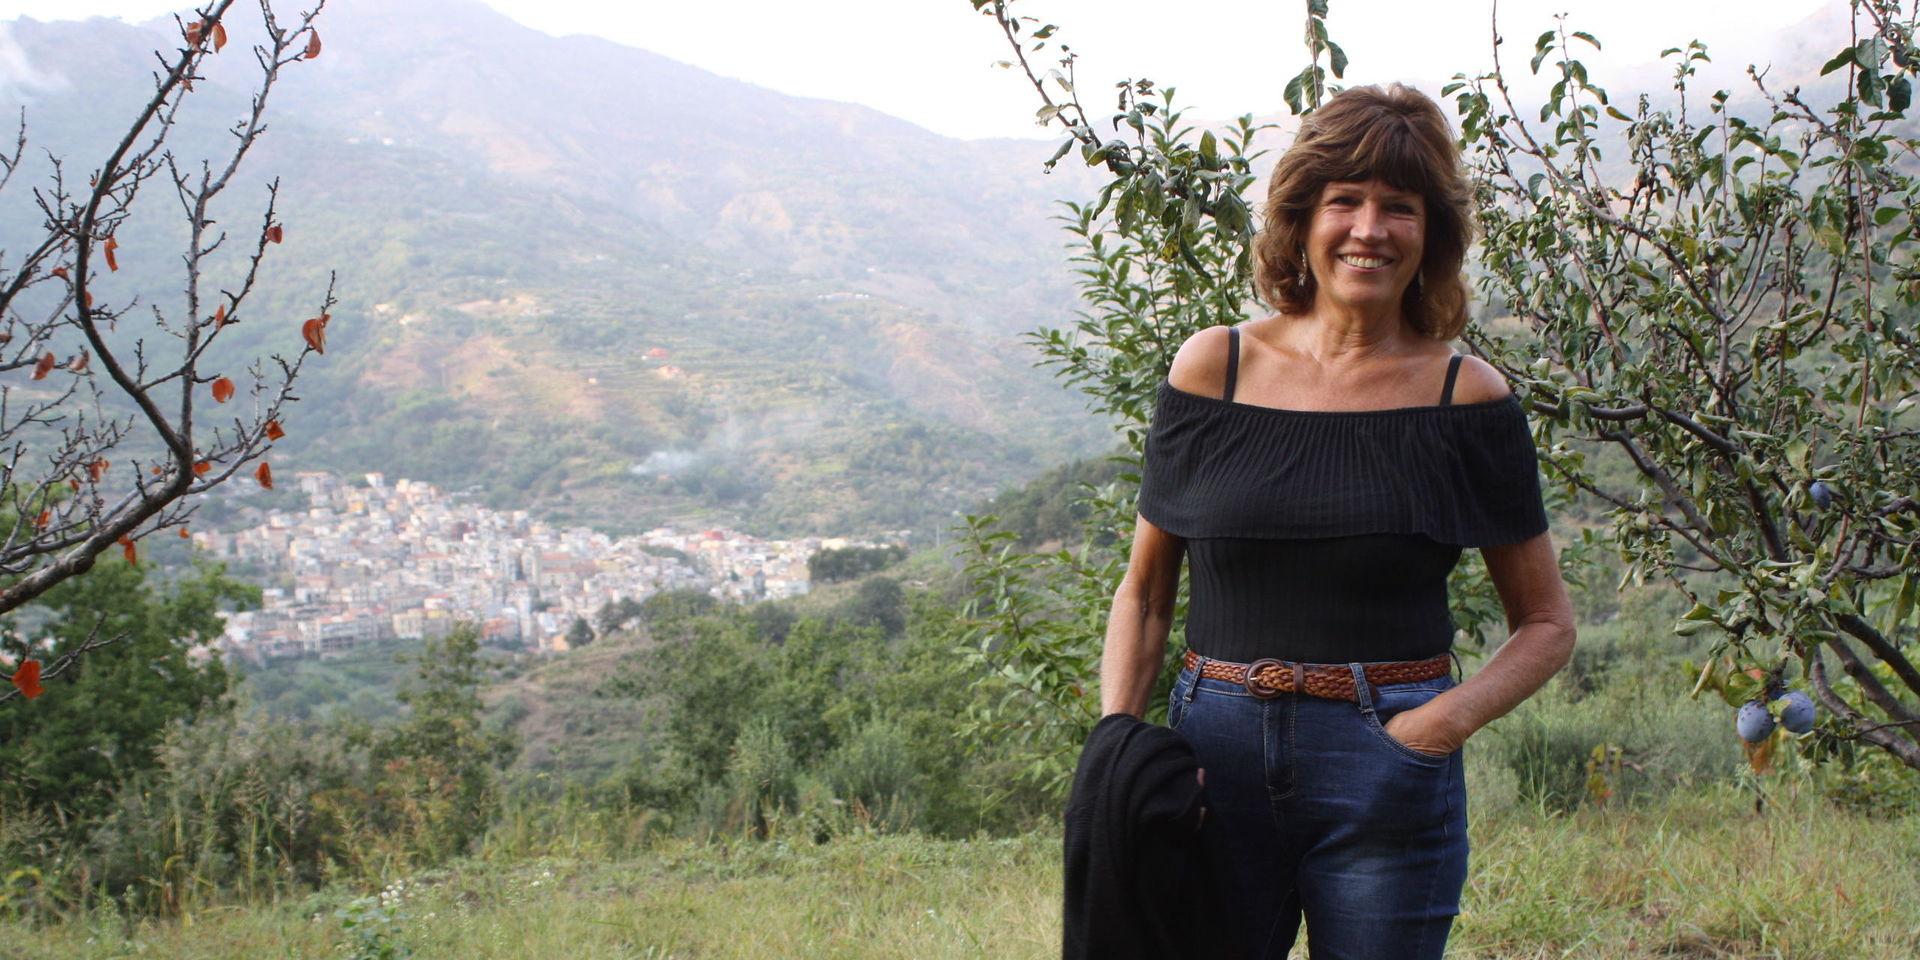 Pensionerade sjuksköterskan Rose-Marie Sjöholm från Kållered har bosatt sig högt uppe i bergen med utsikt över orten Graniti på Sicilien. Där stortrivs hon med lugnet, även om det också är mycket arbete med gården. Den senaste tidens fokus har legat på att få in druvorna.